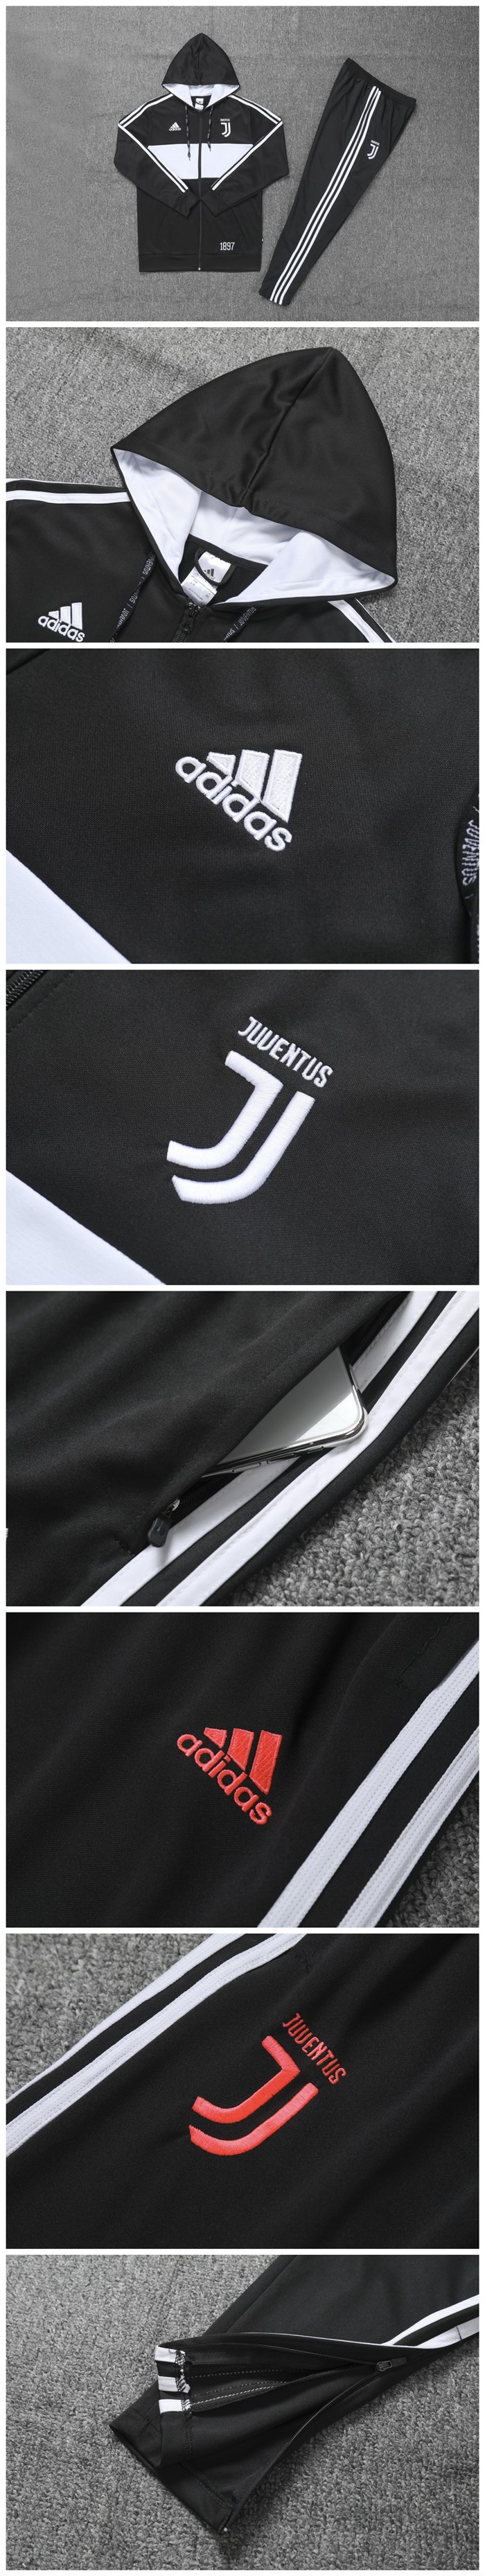 Juventus 2019-20 Black&White Hoody Training Kit